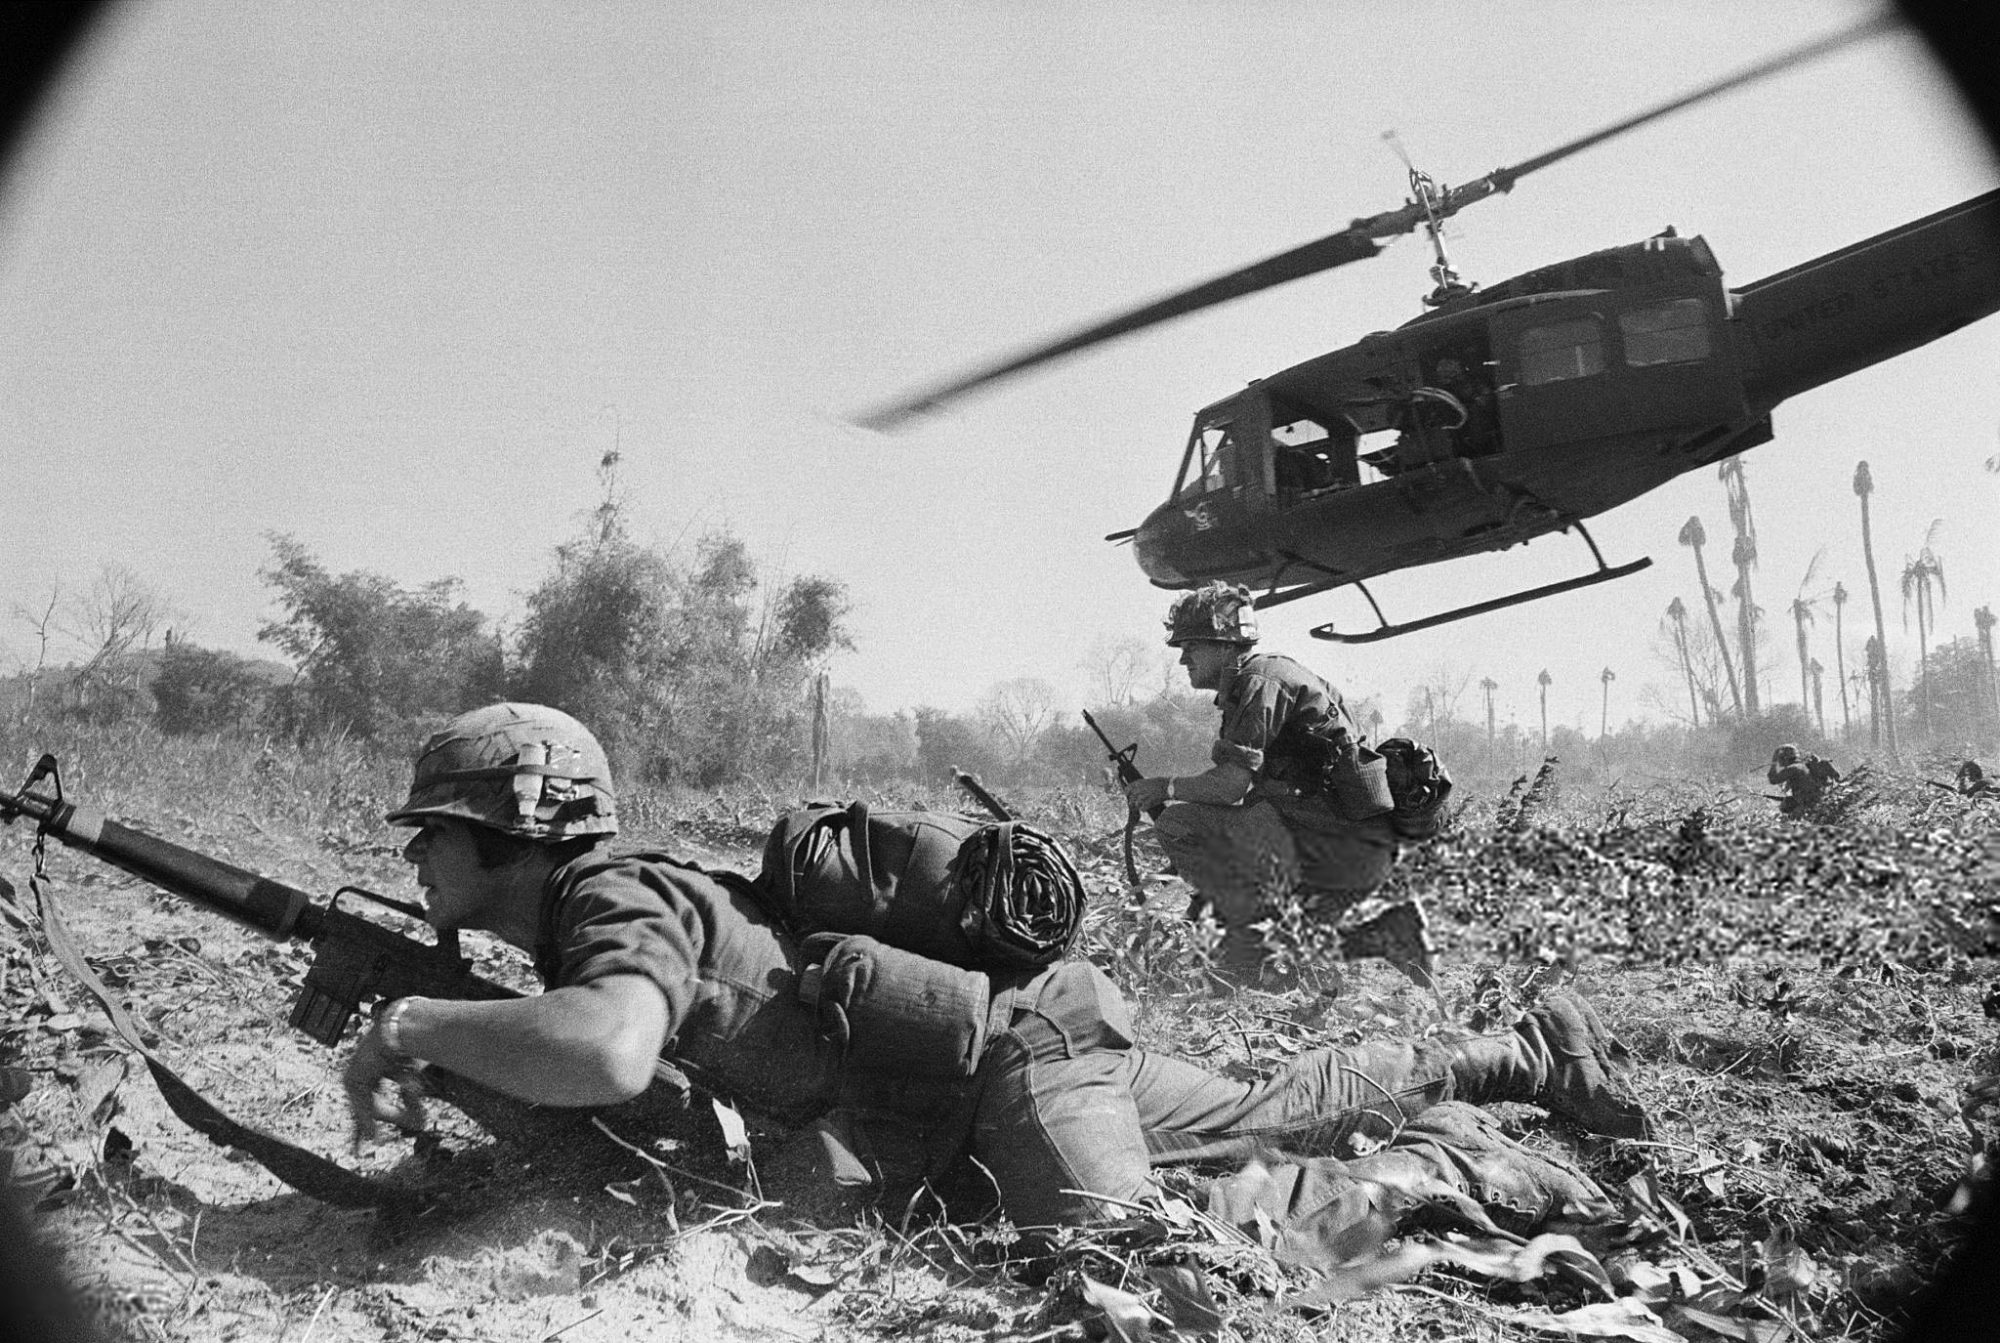 1965 - US Declares War on North Vietnam #1 (Flickr commons)